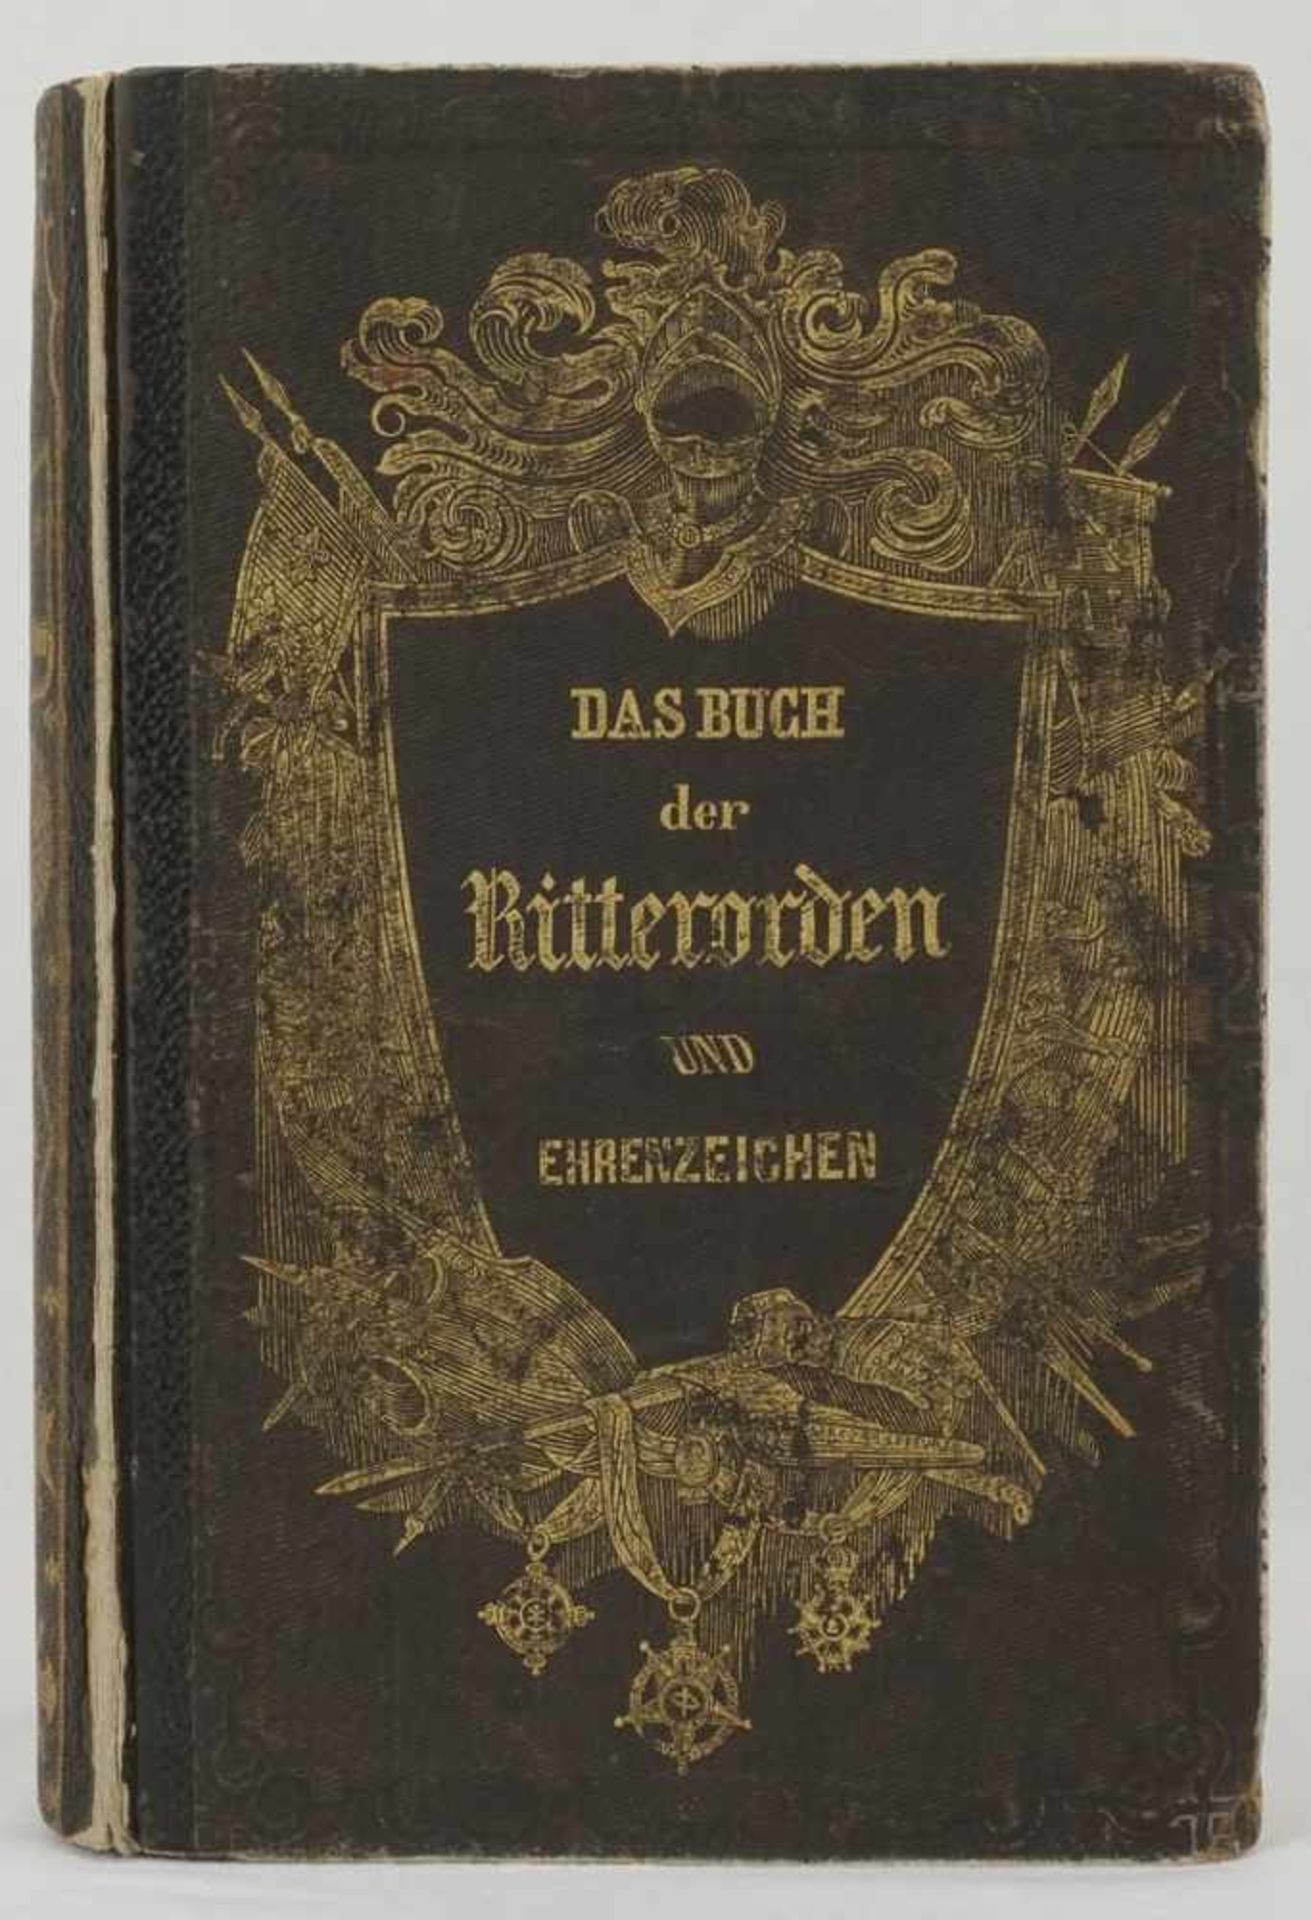 "Das Buch der Ritterorden und Ehrenzeichen"1848, wohl Erstausgabe, Geschichte, Beschreibung und